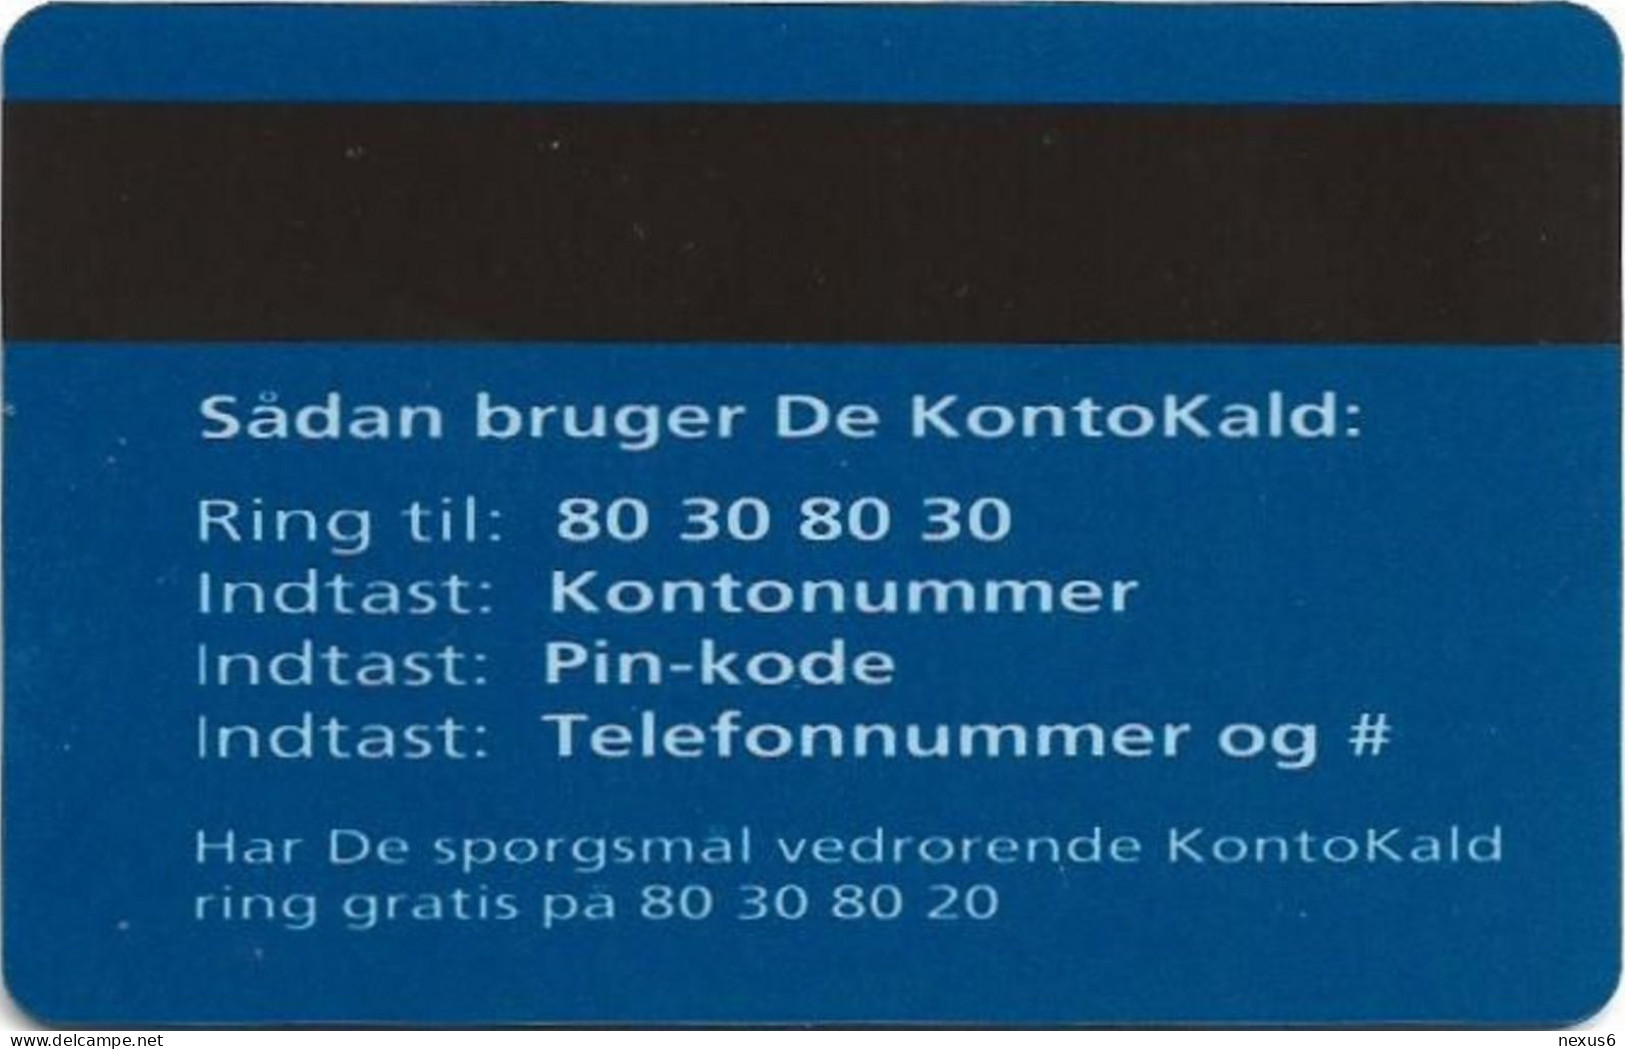 Denmark - Tele Danmark - KON-DEN-003 - Kontokald (Blue) Magnetic Creditcard, Used - Dinamarca